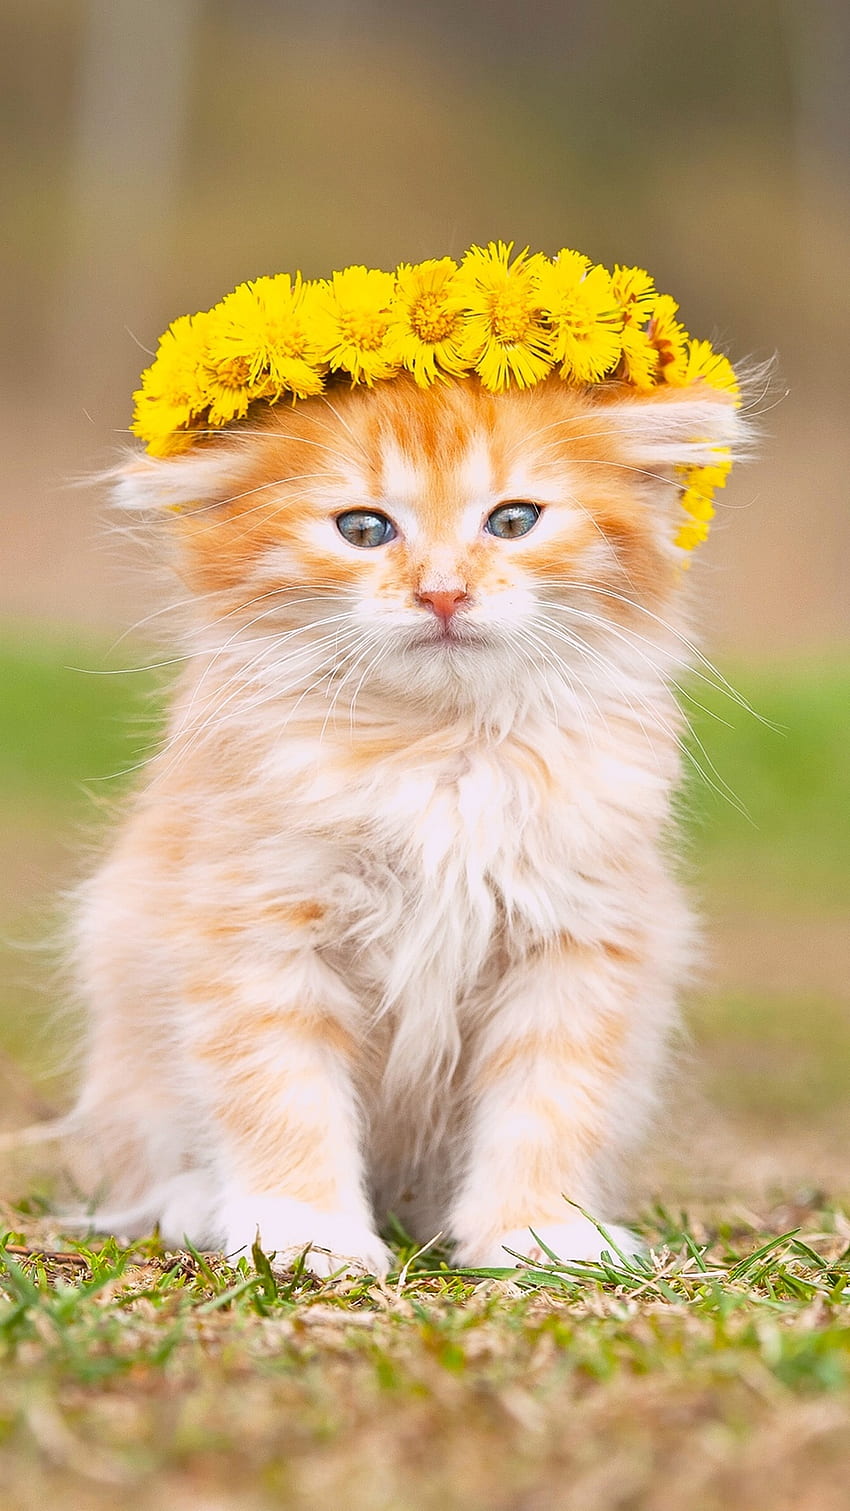 Cute fluffy kitten, wreath, yellow flowers iPhone X 8, 7, 6, 5, 4, 3GS HD phone wallpaper